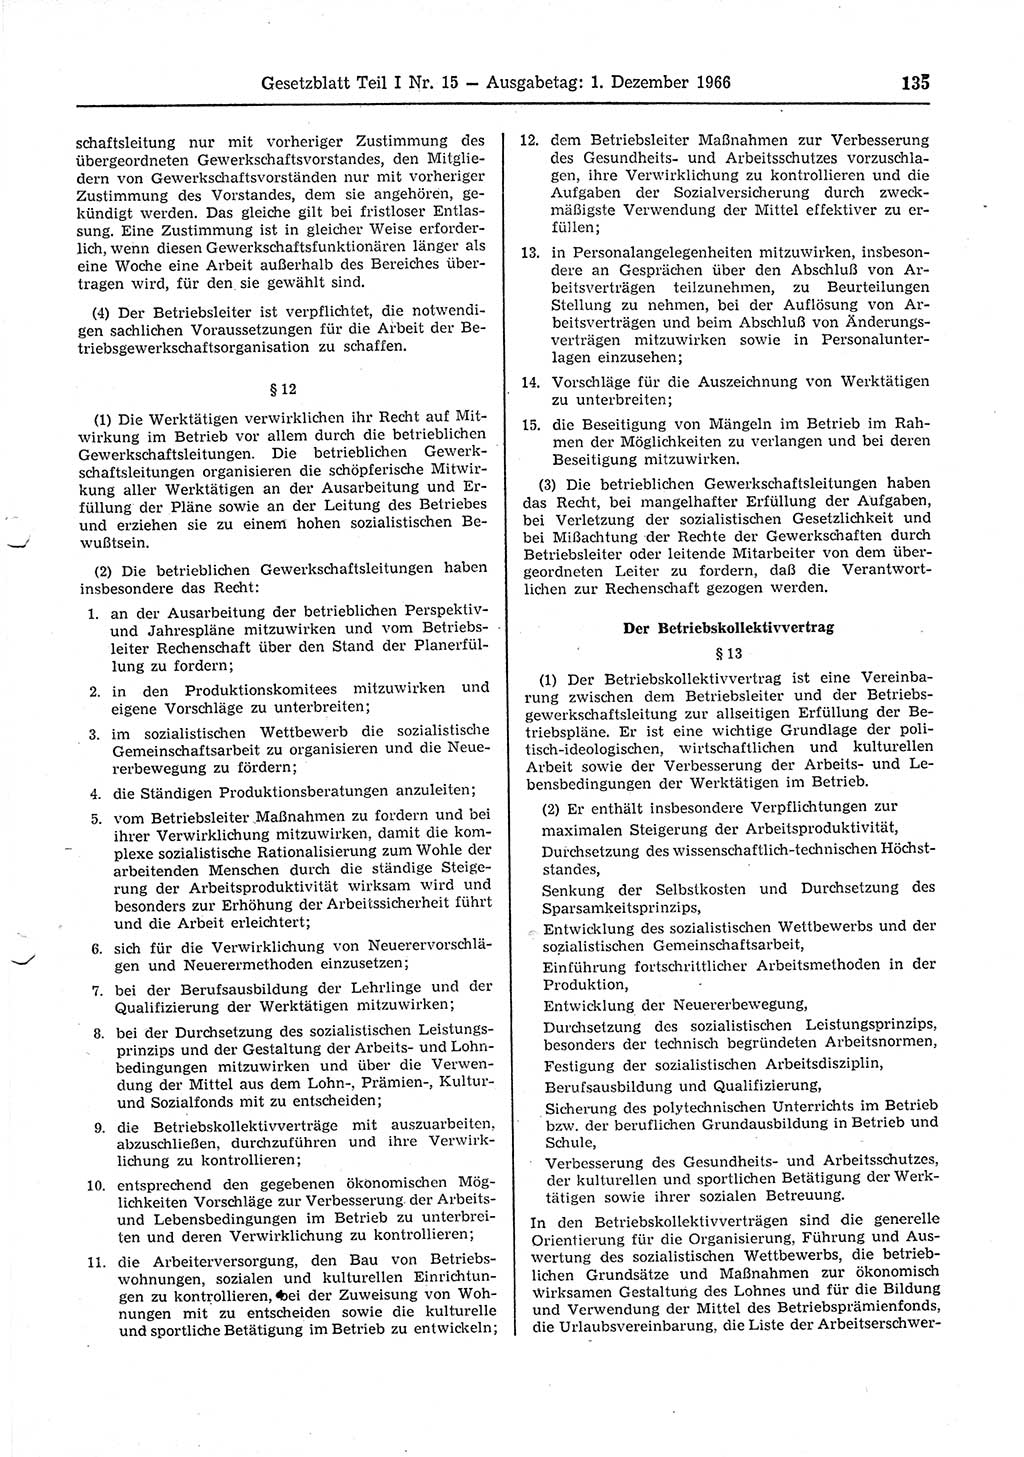 Gesetzblatt (GBl.) der Deutschen Demokratischen Republik (DDR) Teil Ⅰ 1966, Seite 135 (GBl. DDR Ⅰ 1966, S. 135)